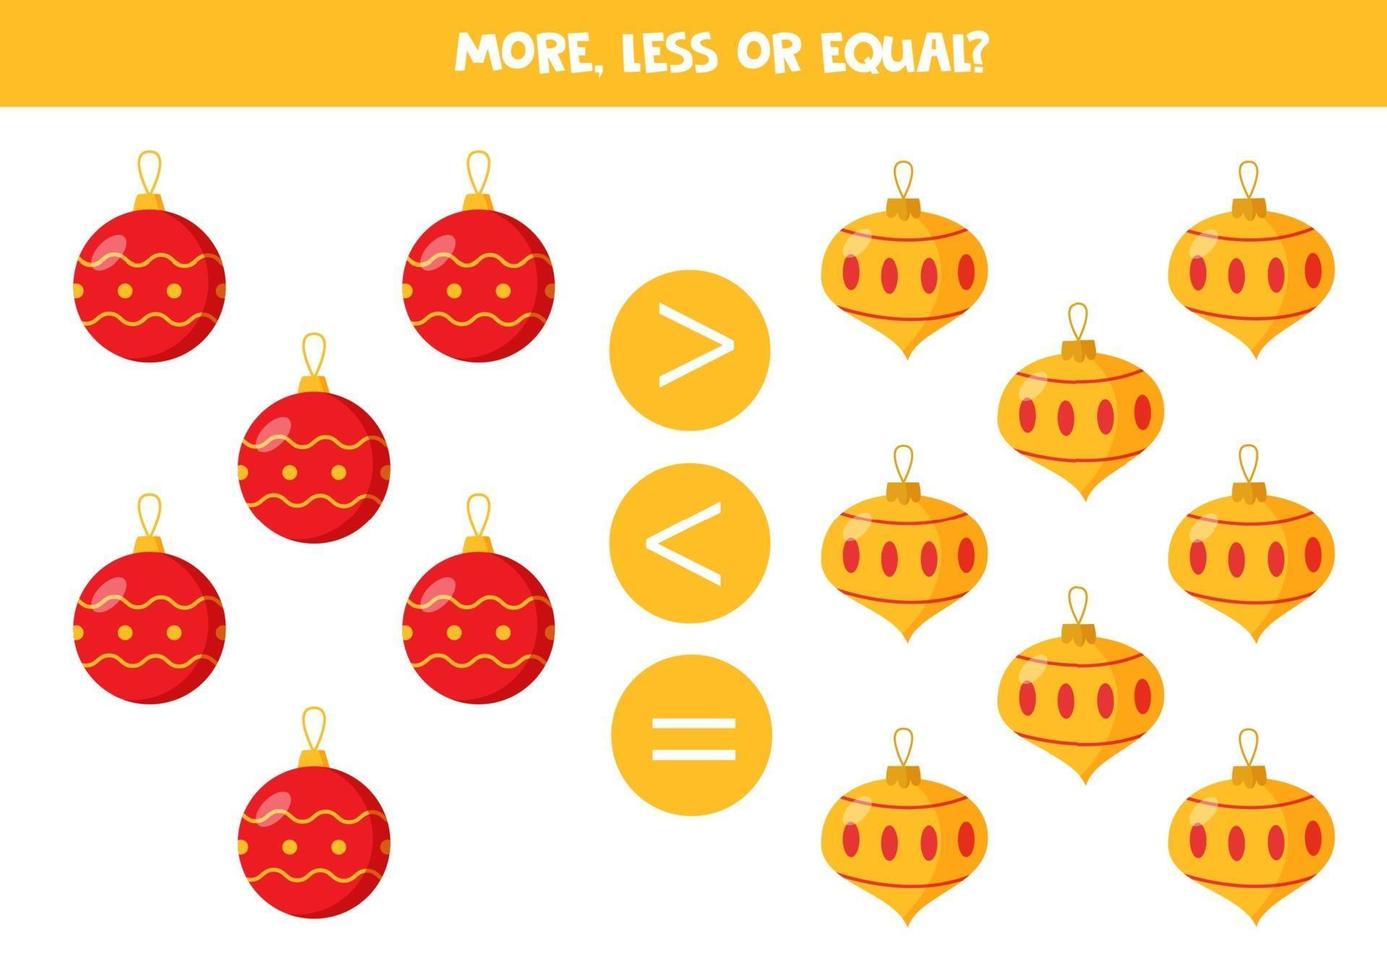 meer, minder, gelijk aan kerstballen. vergelijking van cijfers voor kinderen. vector